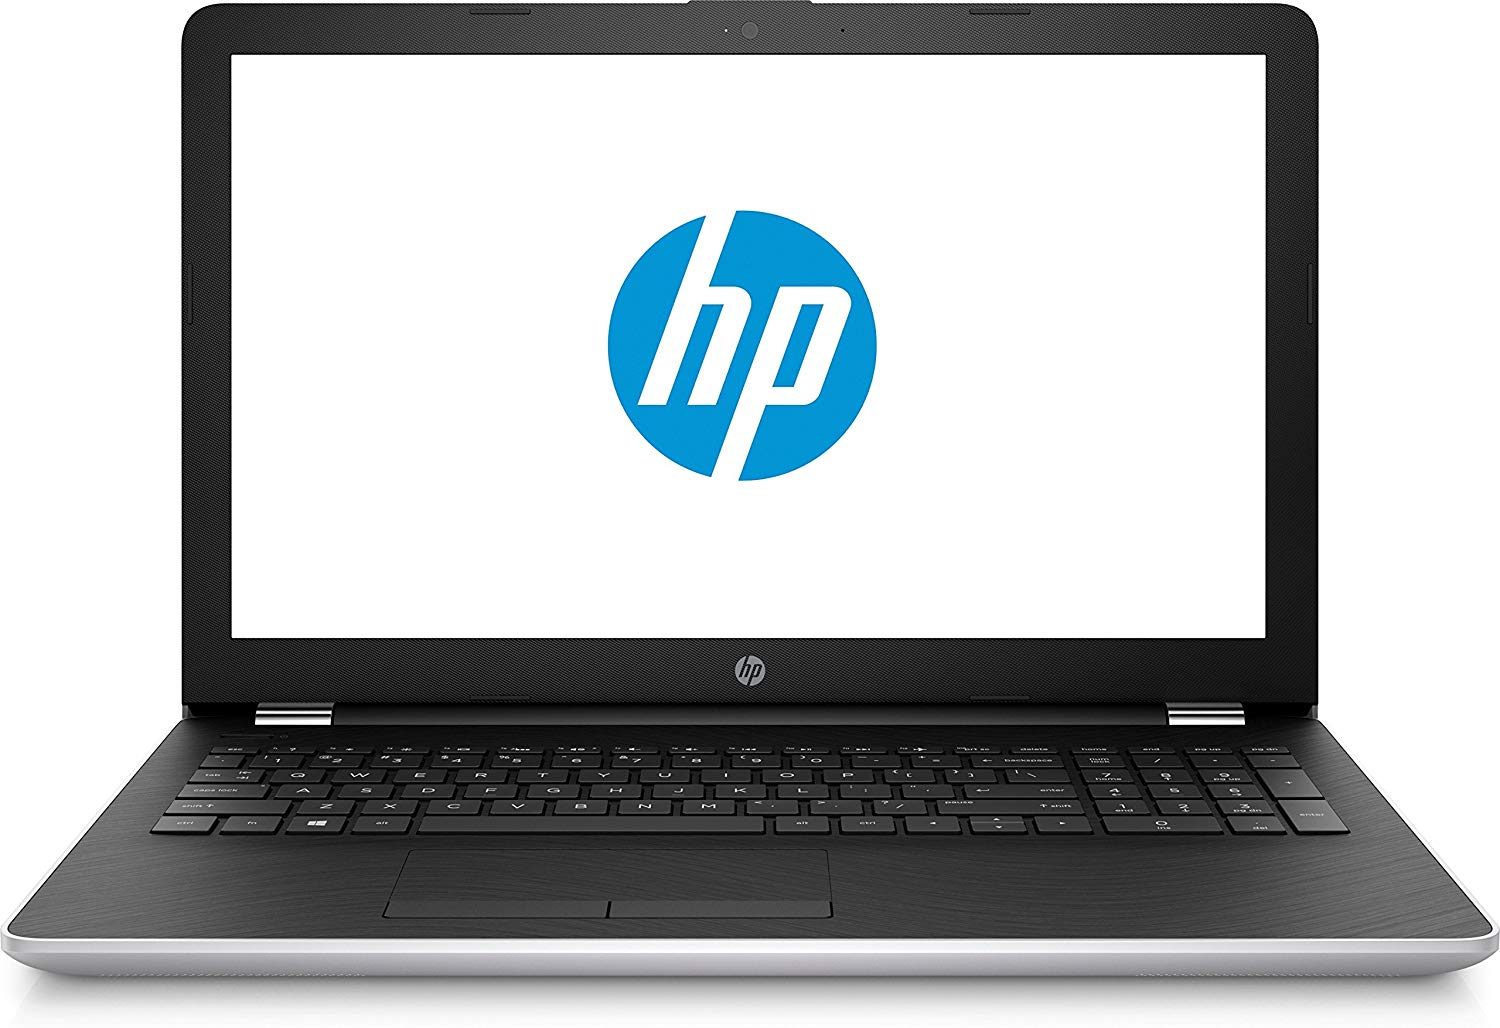 HP 15 Core i3 7th gen 15.6-inch Laptop (4GB/1TB HDD/Windows 10 Home/Natural Silver/2.04 kg), 15-DA0326TU